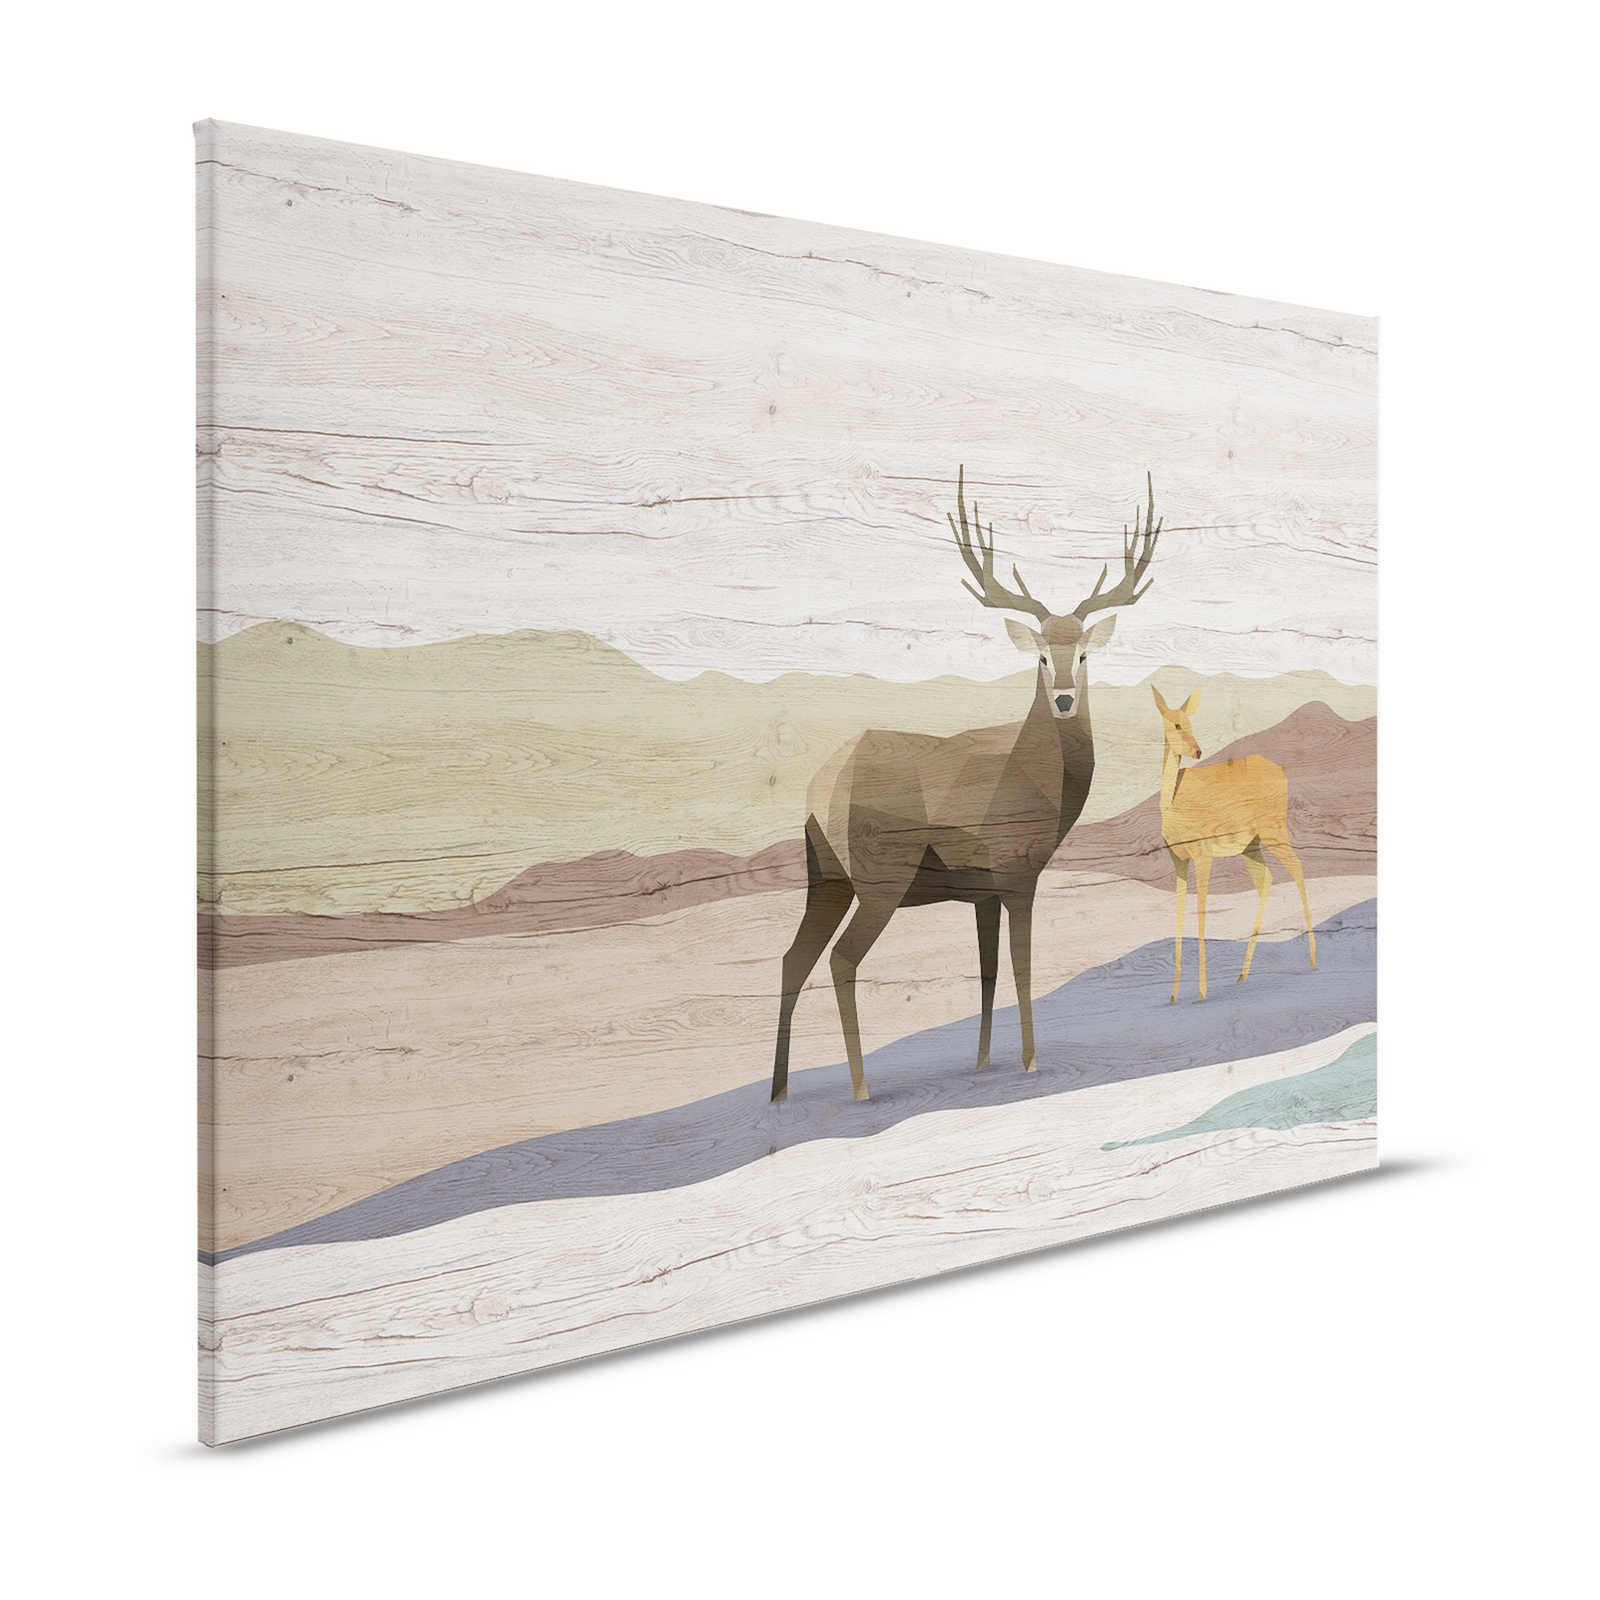 Yukon 2 - Canvas painting wood grain, deer & roe deer design - 1.20 m x 0.80 m
